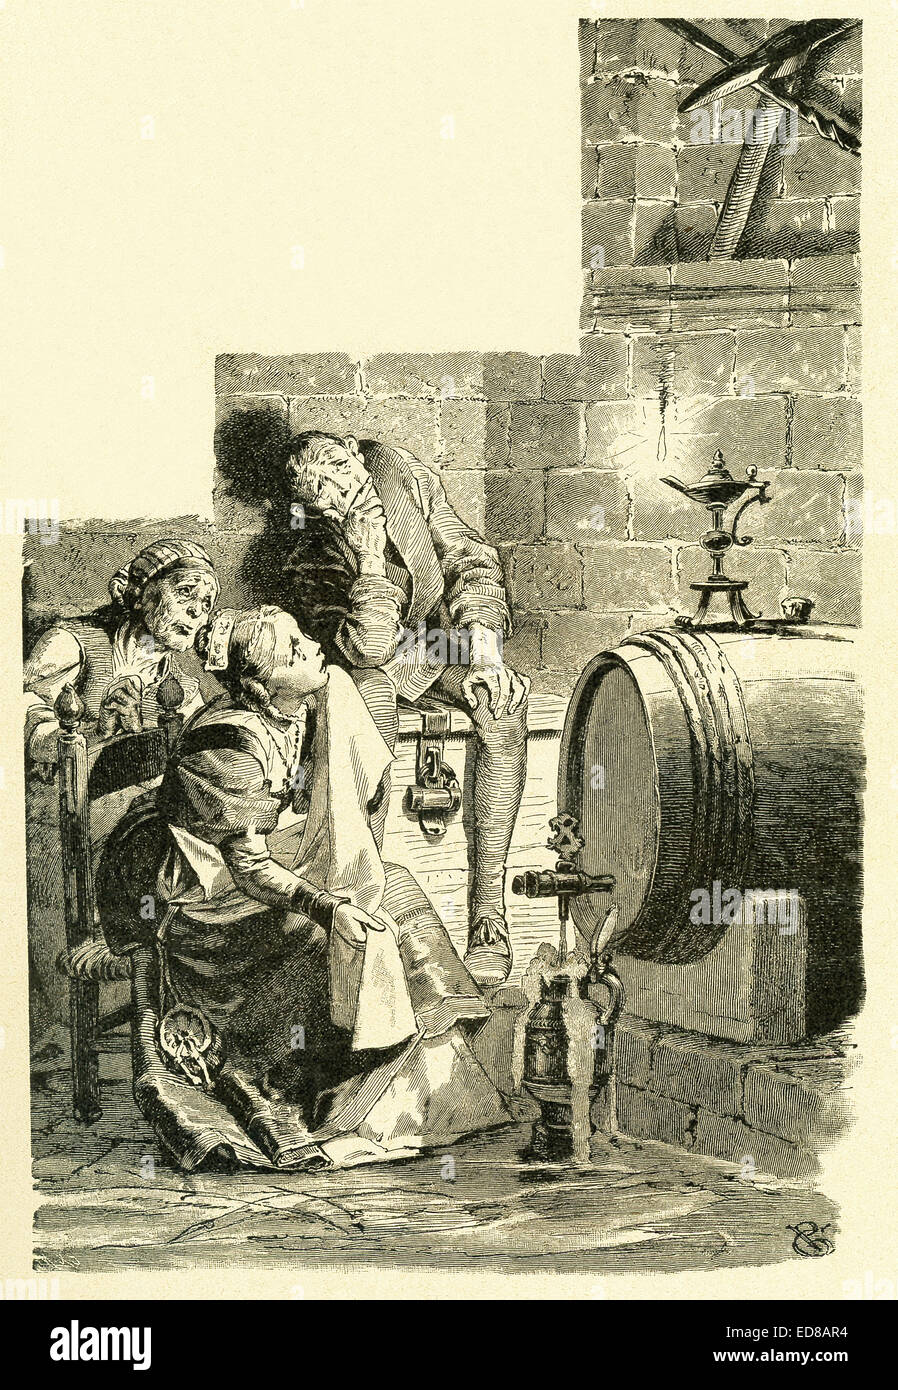 En 1812, les frères Grimm, Jacob et Wilhelm, publié contes pour enfants, une collection contes allemands. Cette illustration a accompagné l'autre 'conte' et montre d'autre et sa mère et son père à la pioche à la pensée d'autre qui pourrait tomber sur son enfant quand il est venu en bas des années plus tard si elle épouse le prétendant qui était venu à sa maison et ils ont eu un enfant. Cette image est de Grimms Eventyr (Grimm's Fairy Tales) par Carl Ewald, publié en 1922. Le frontispice a l'illustrations de Philip Grot Johann et R. Leinweber. Banque D'Images